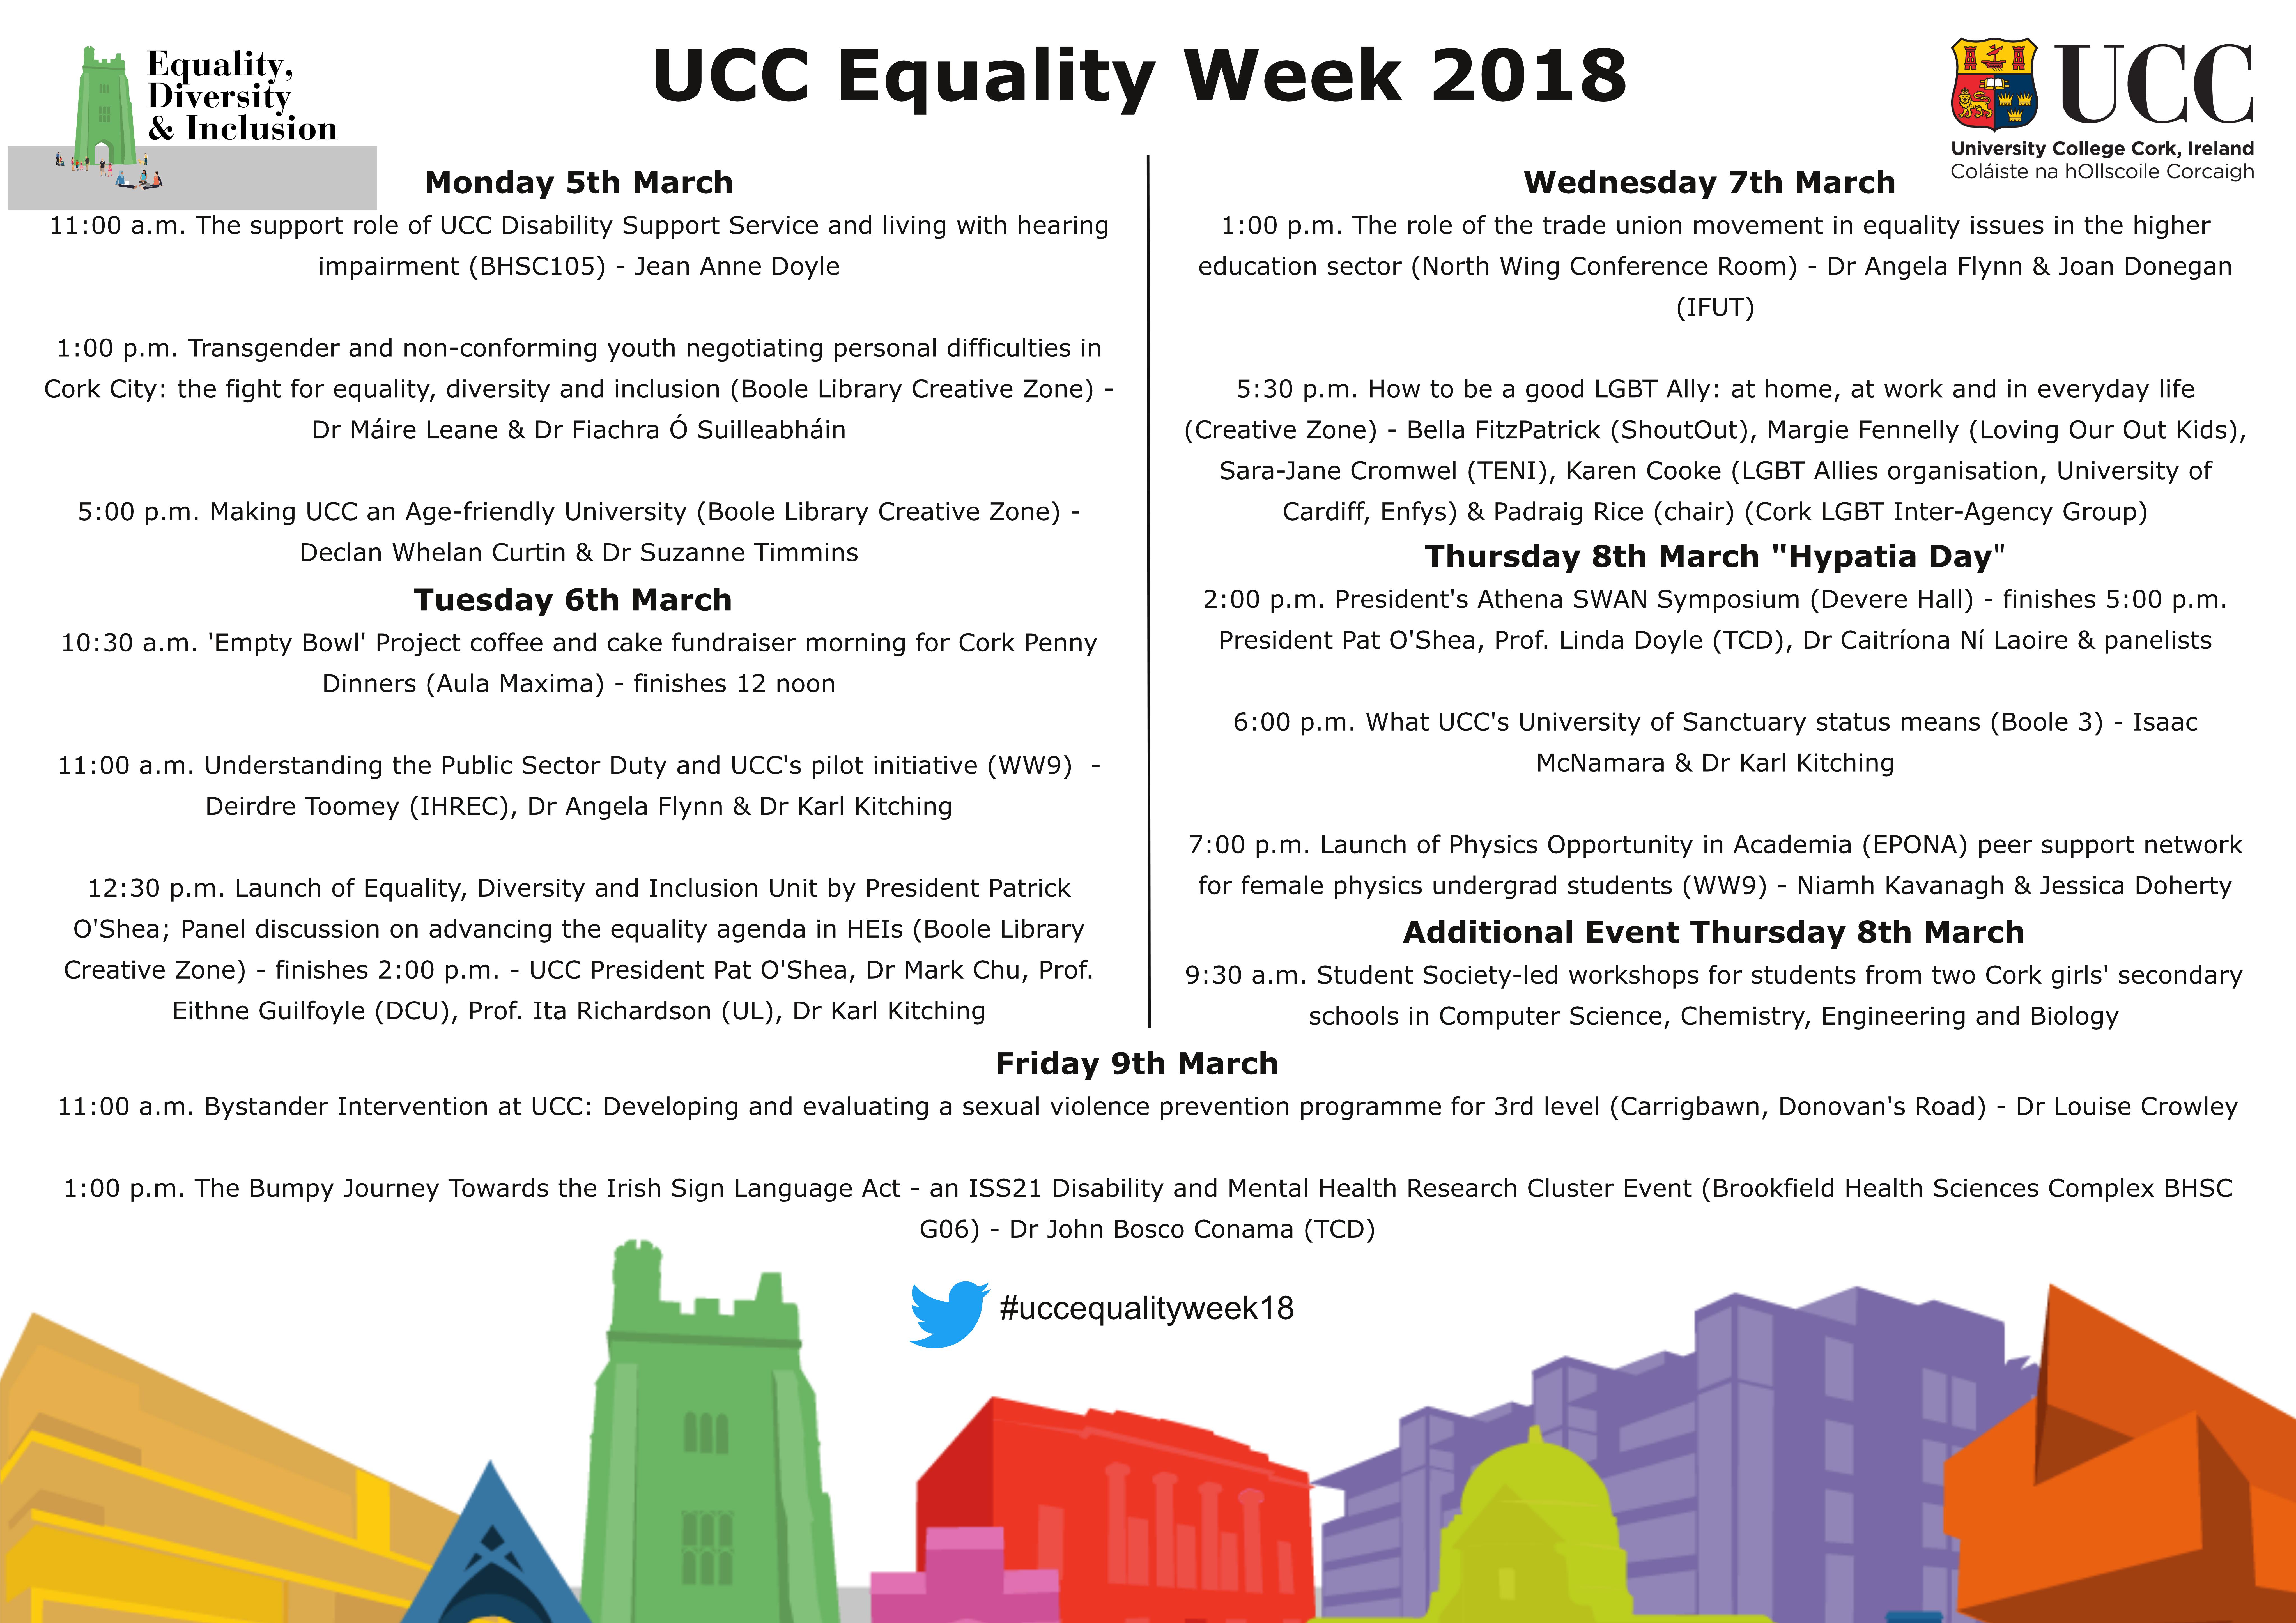 Equality Week 2018 - Videos